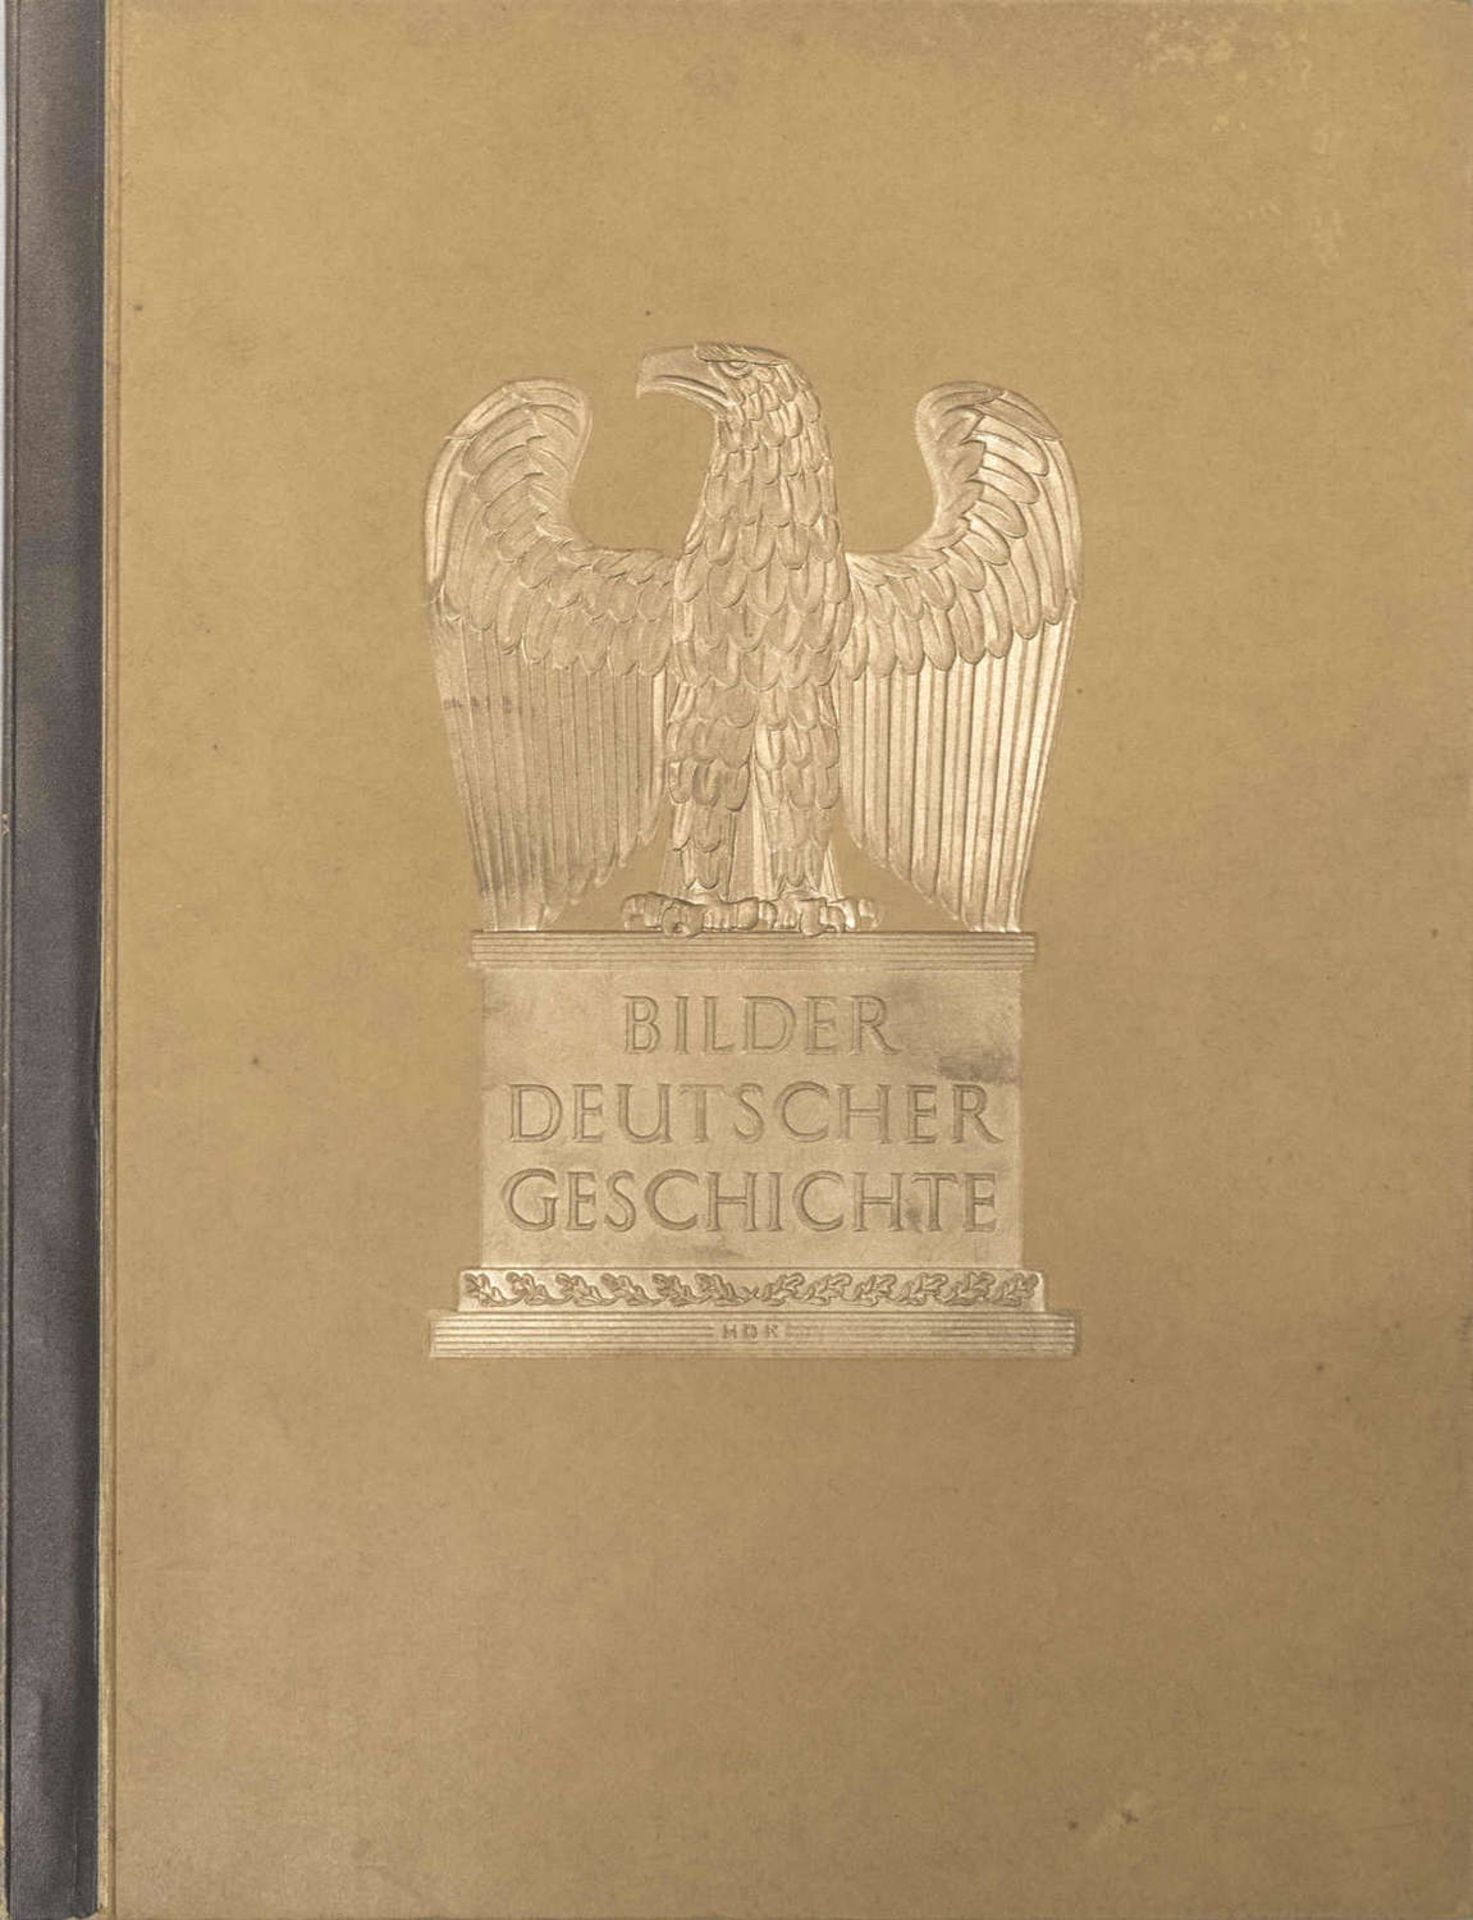 Sammelbilderalbum, "Bilder deutscher Geschichte". Werk 12. Ausgegeben von Cigaretten -